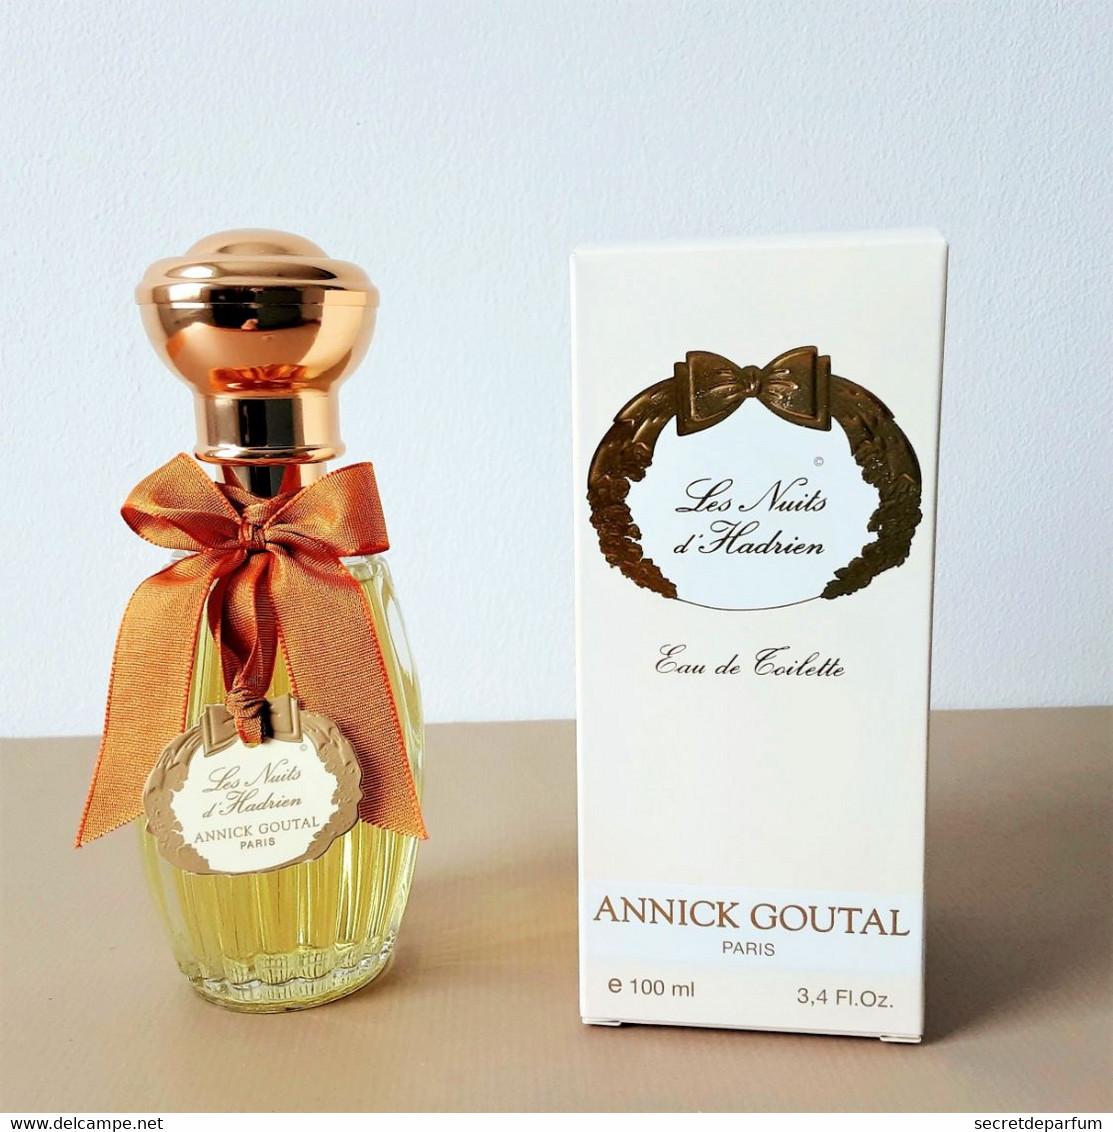 FLACON De Parfum Neuf   ANNICK GOUTAL EDT    LES NUITS D'HADRIEN    FLACON TRANSPARENT  100 Ml + Boite - Women